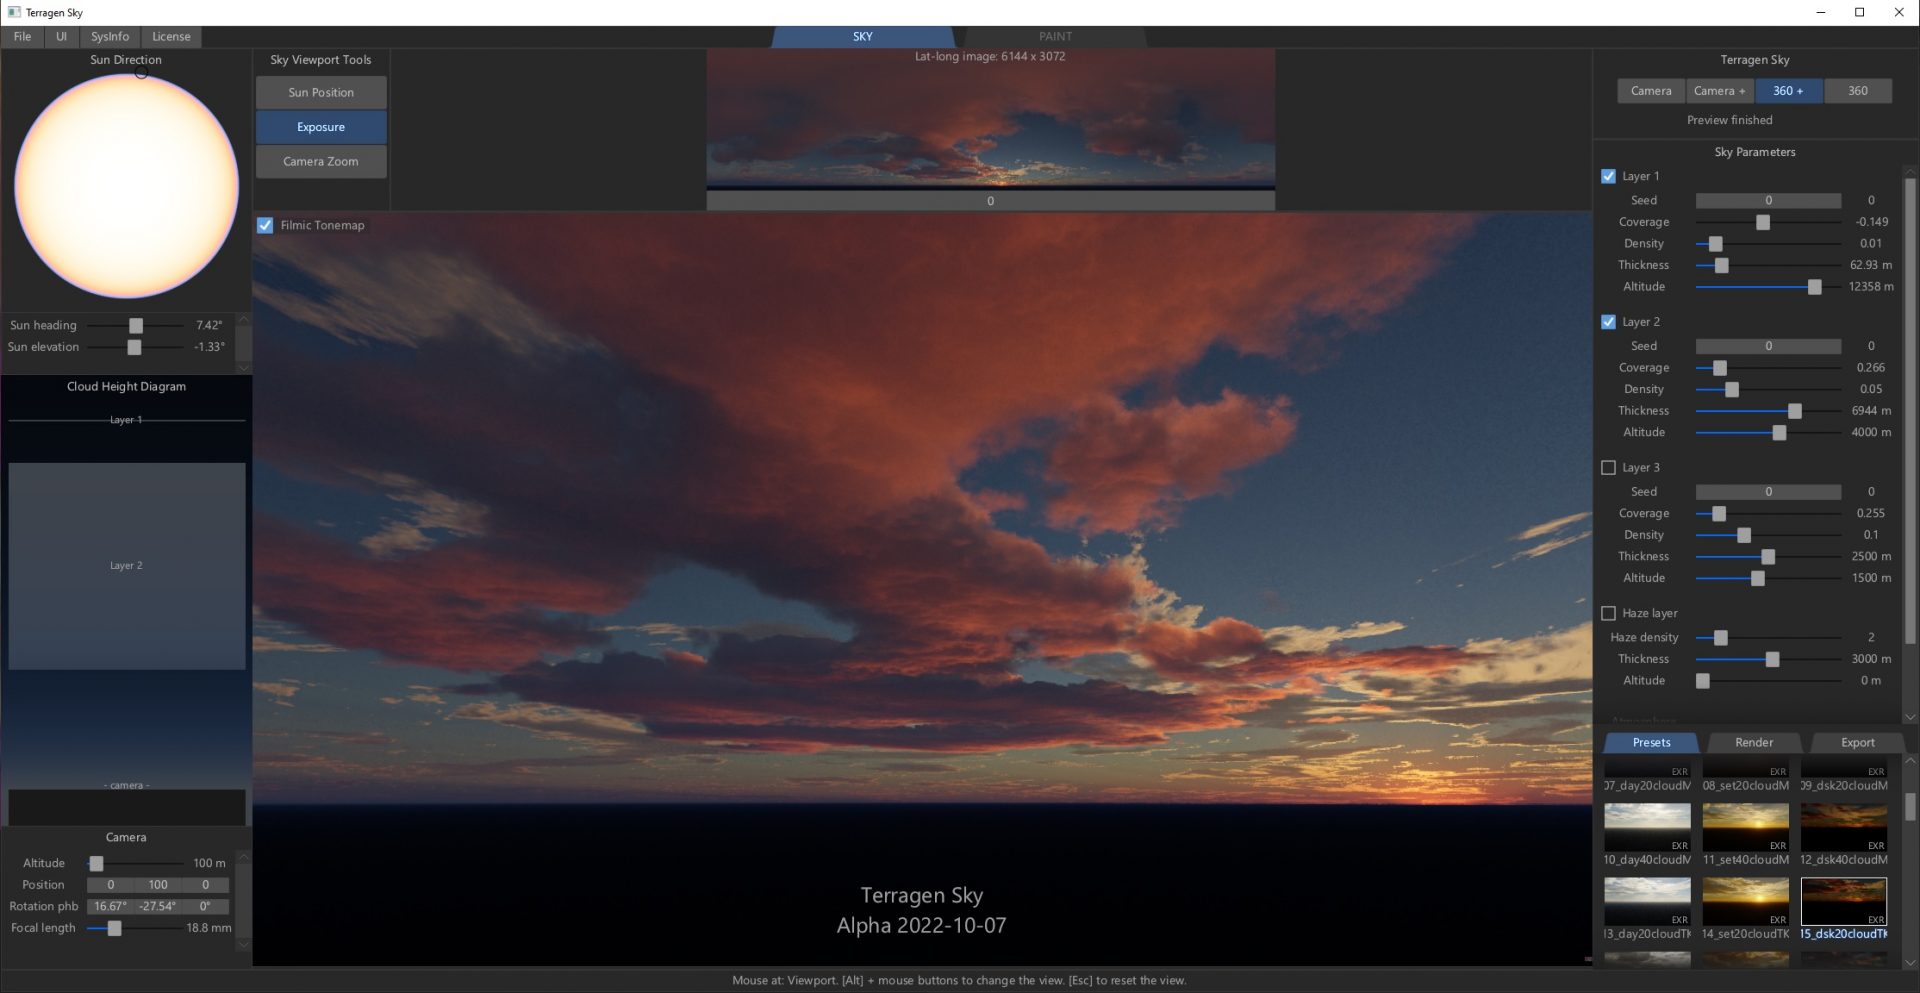 Terragen Sky – Planetside Software